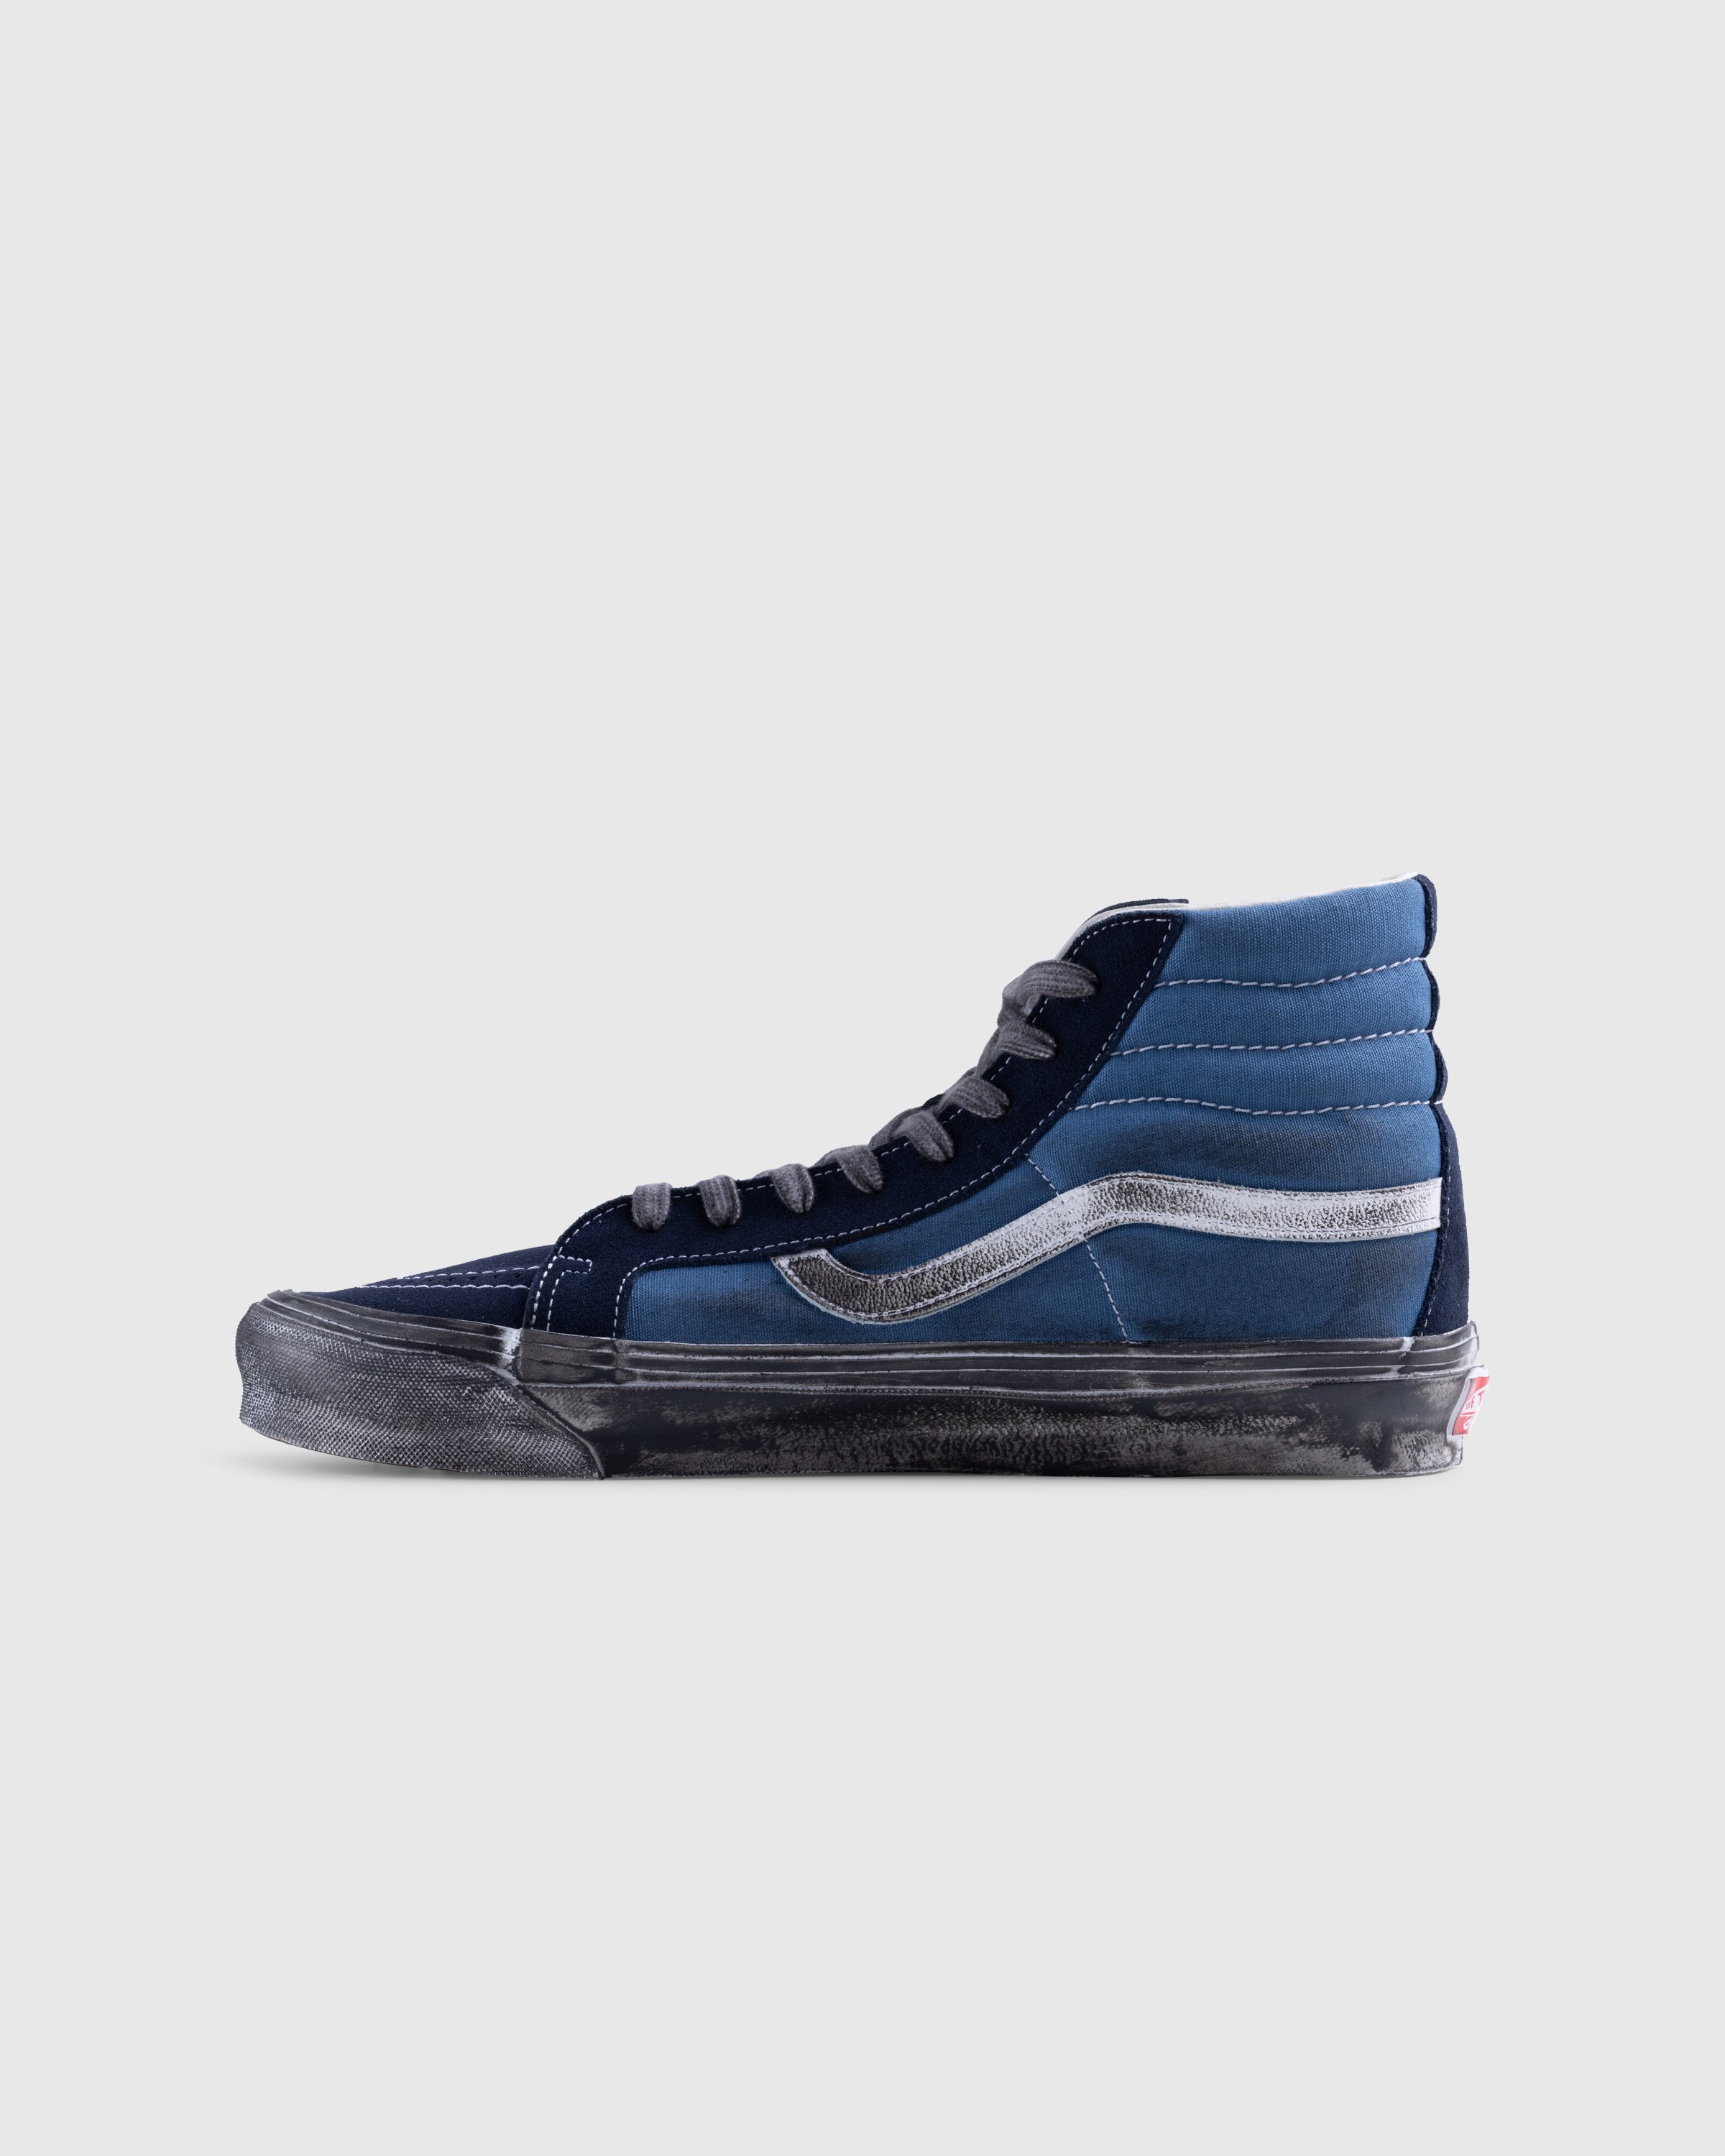 Vans - UA OG SK8-Hi LX STRE DKBRN - Footwear - Blue - Image 2